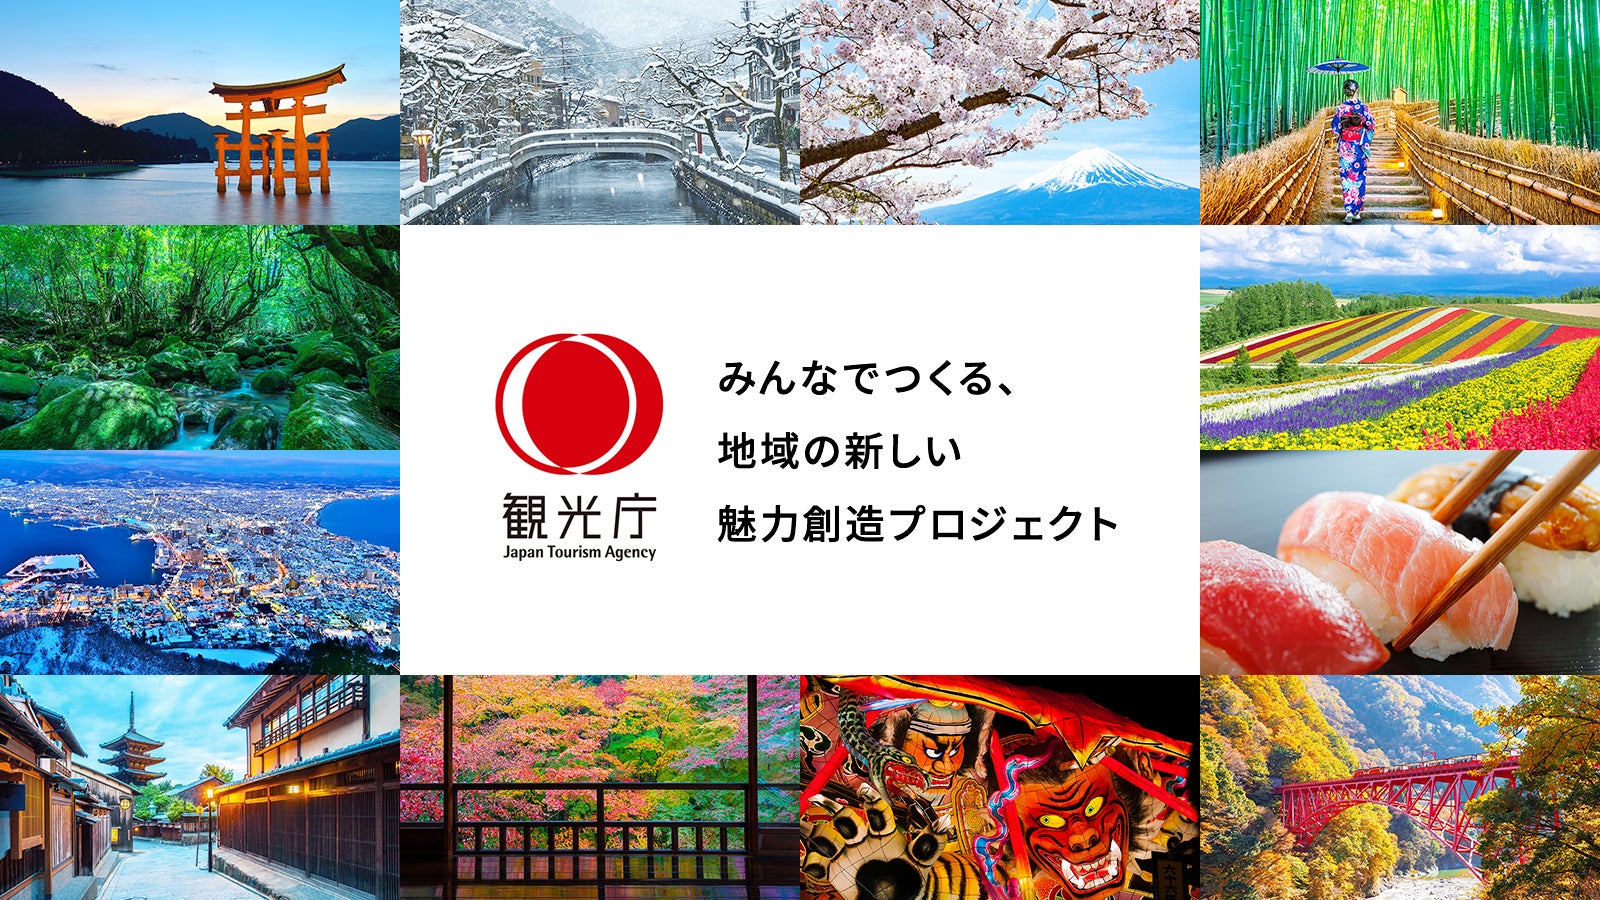 【渋谷ポップカルチャーアートイベント】3月18日〜19日、SLOTH JINNANのGalleryで株式会社Neeew Localによる『Coresuki Art Market』が開催！